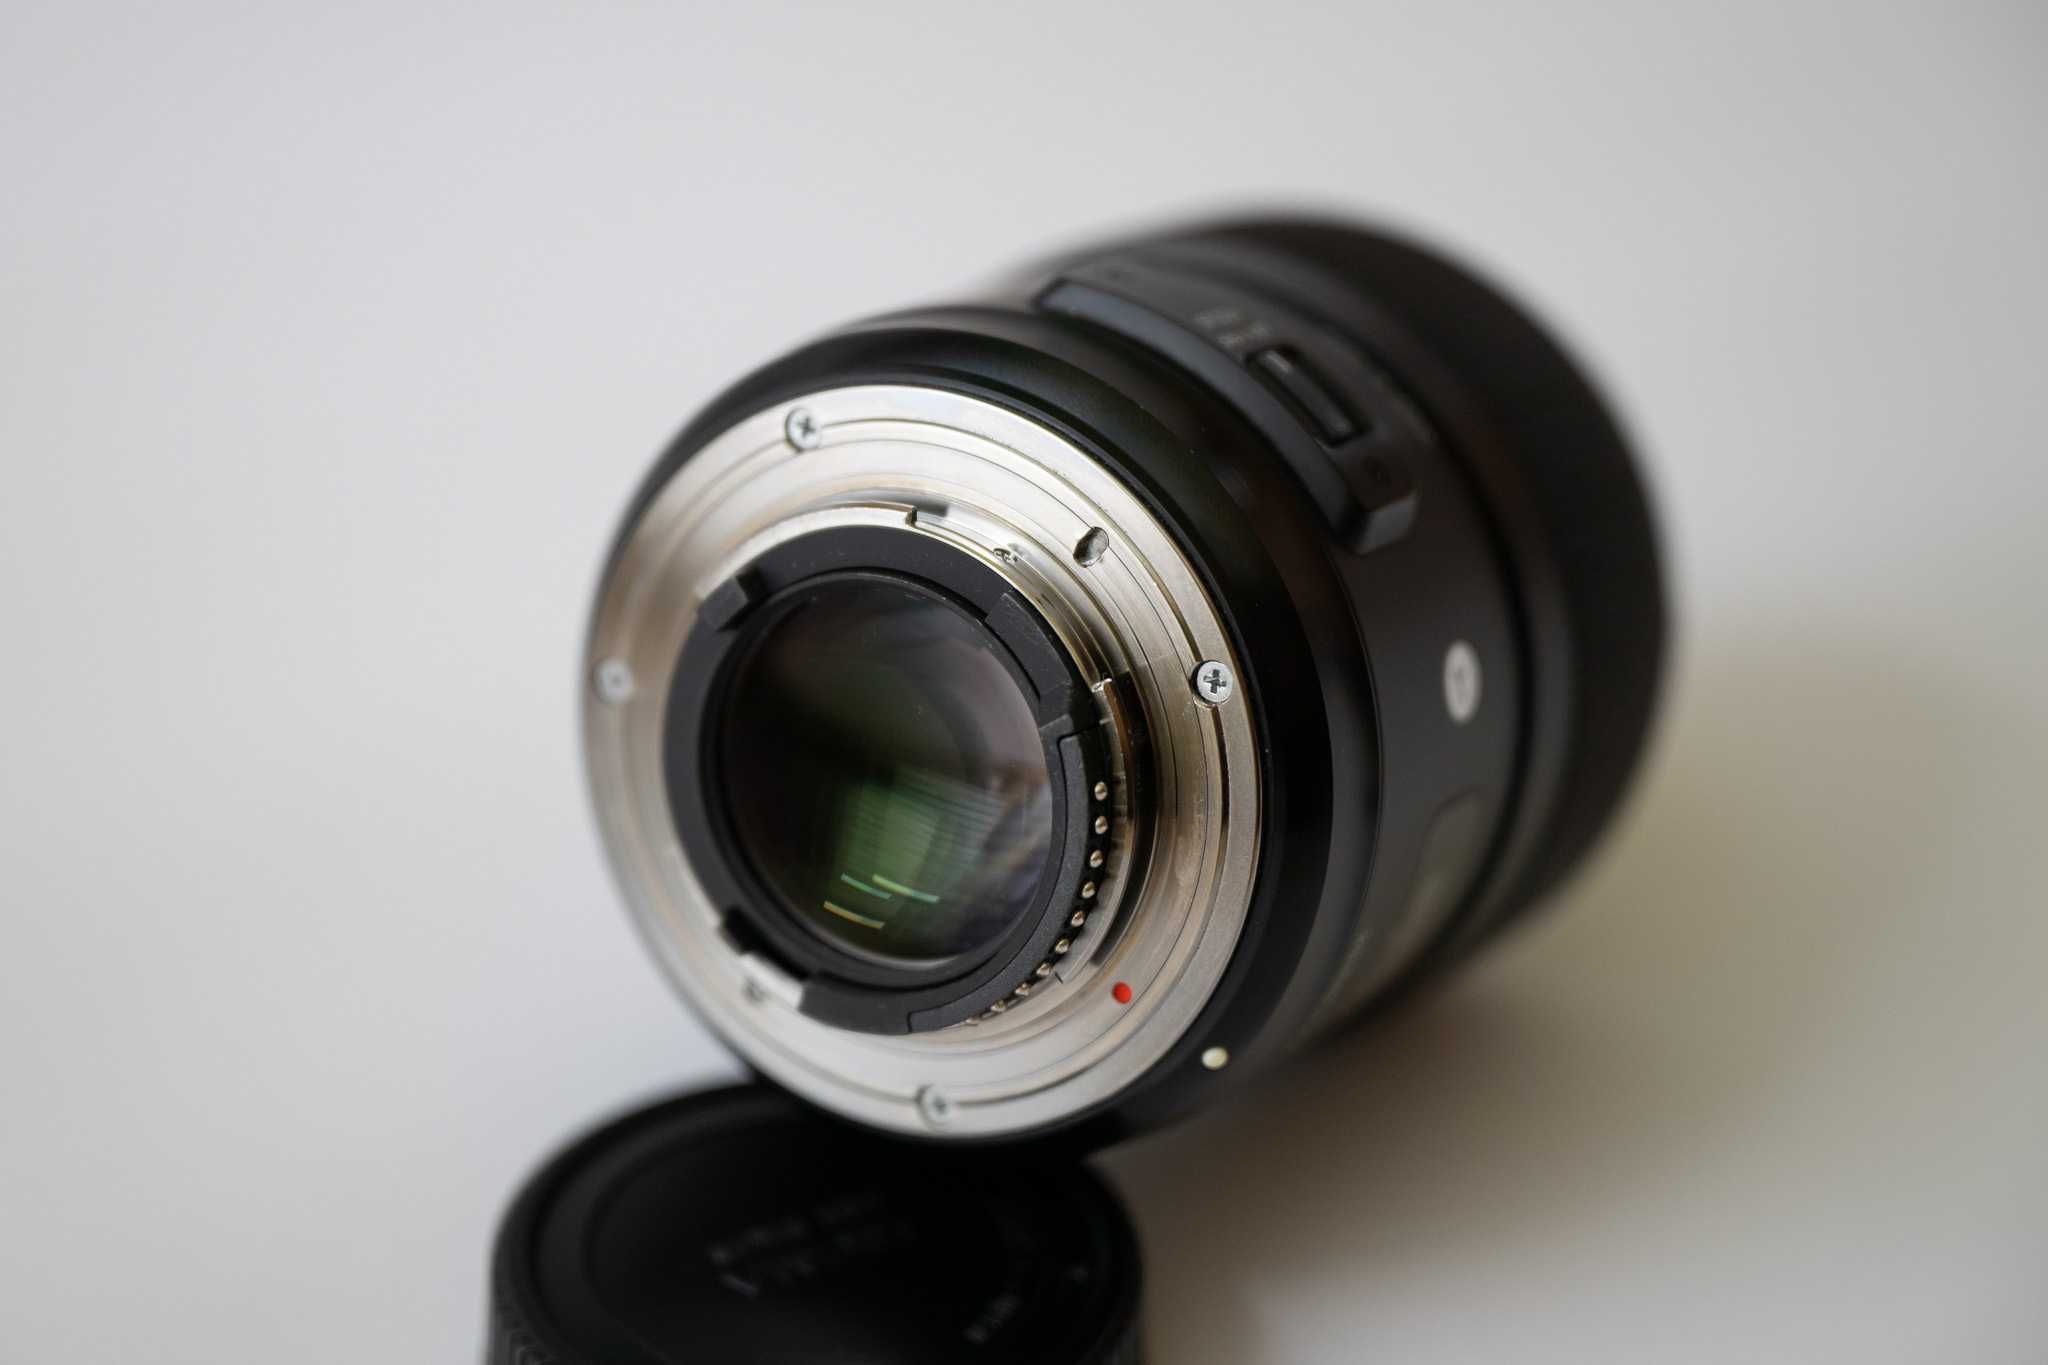 Obiektyw Sigma A 35/1.4 DG HSM Art mocowanie Nikon F - stan idealny